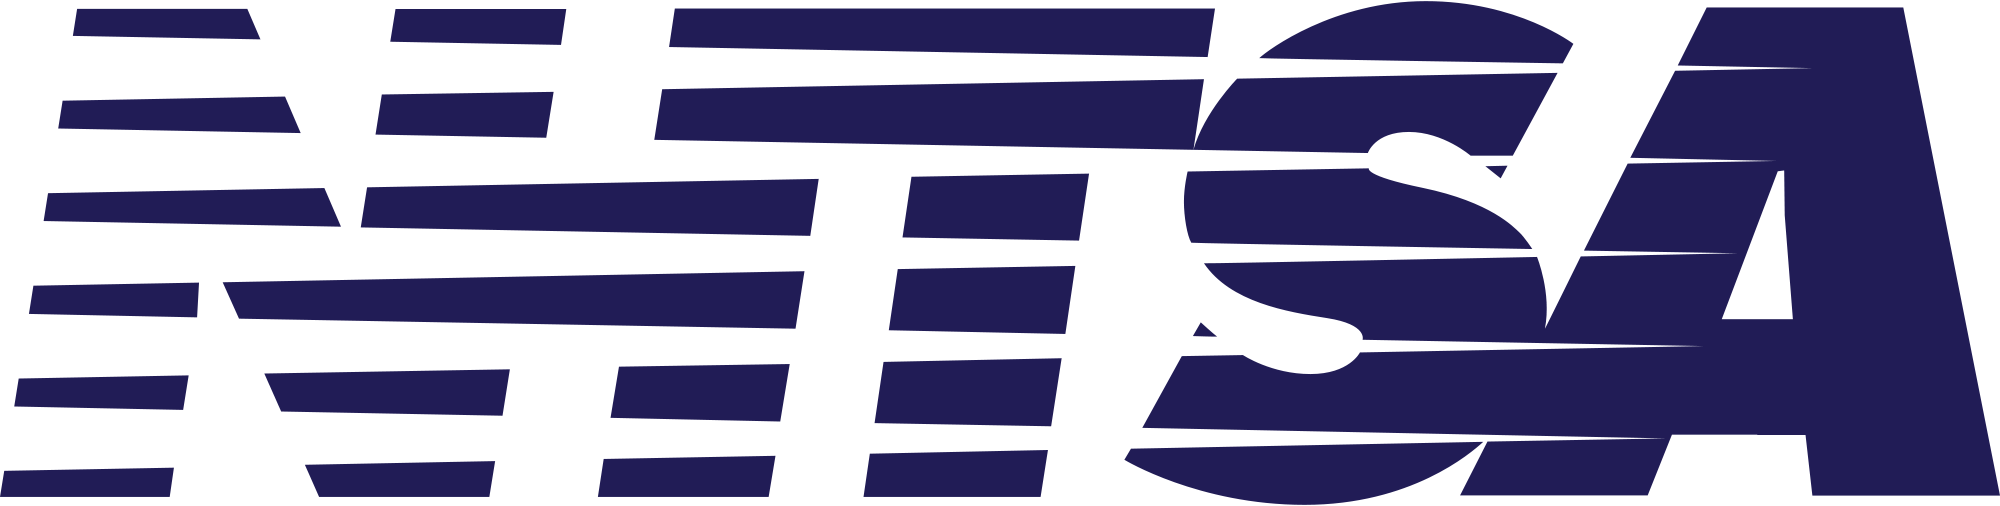 NHTSA Logo - US NHTSA 1990sLogo.svg